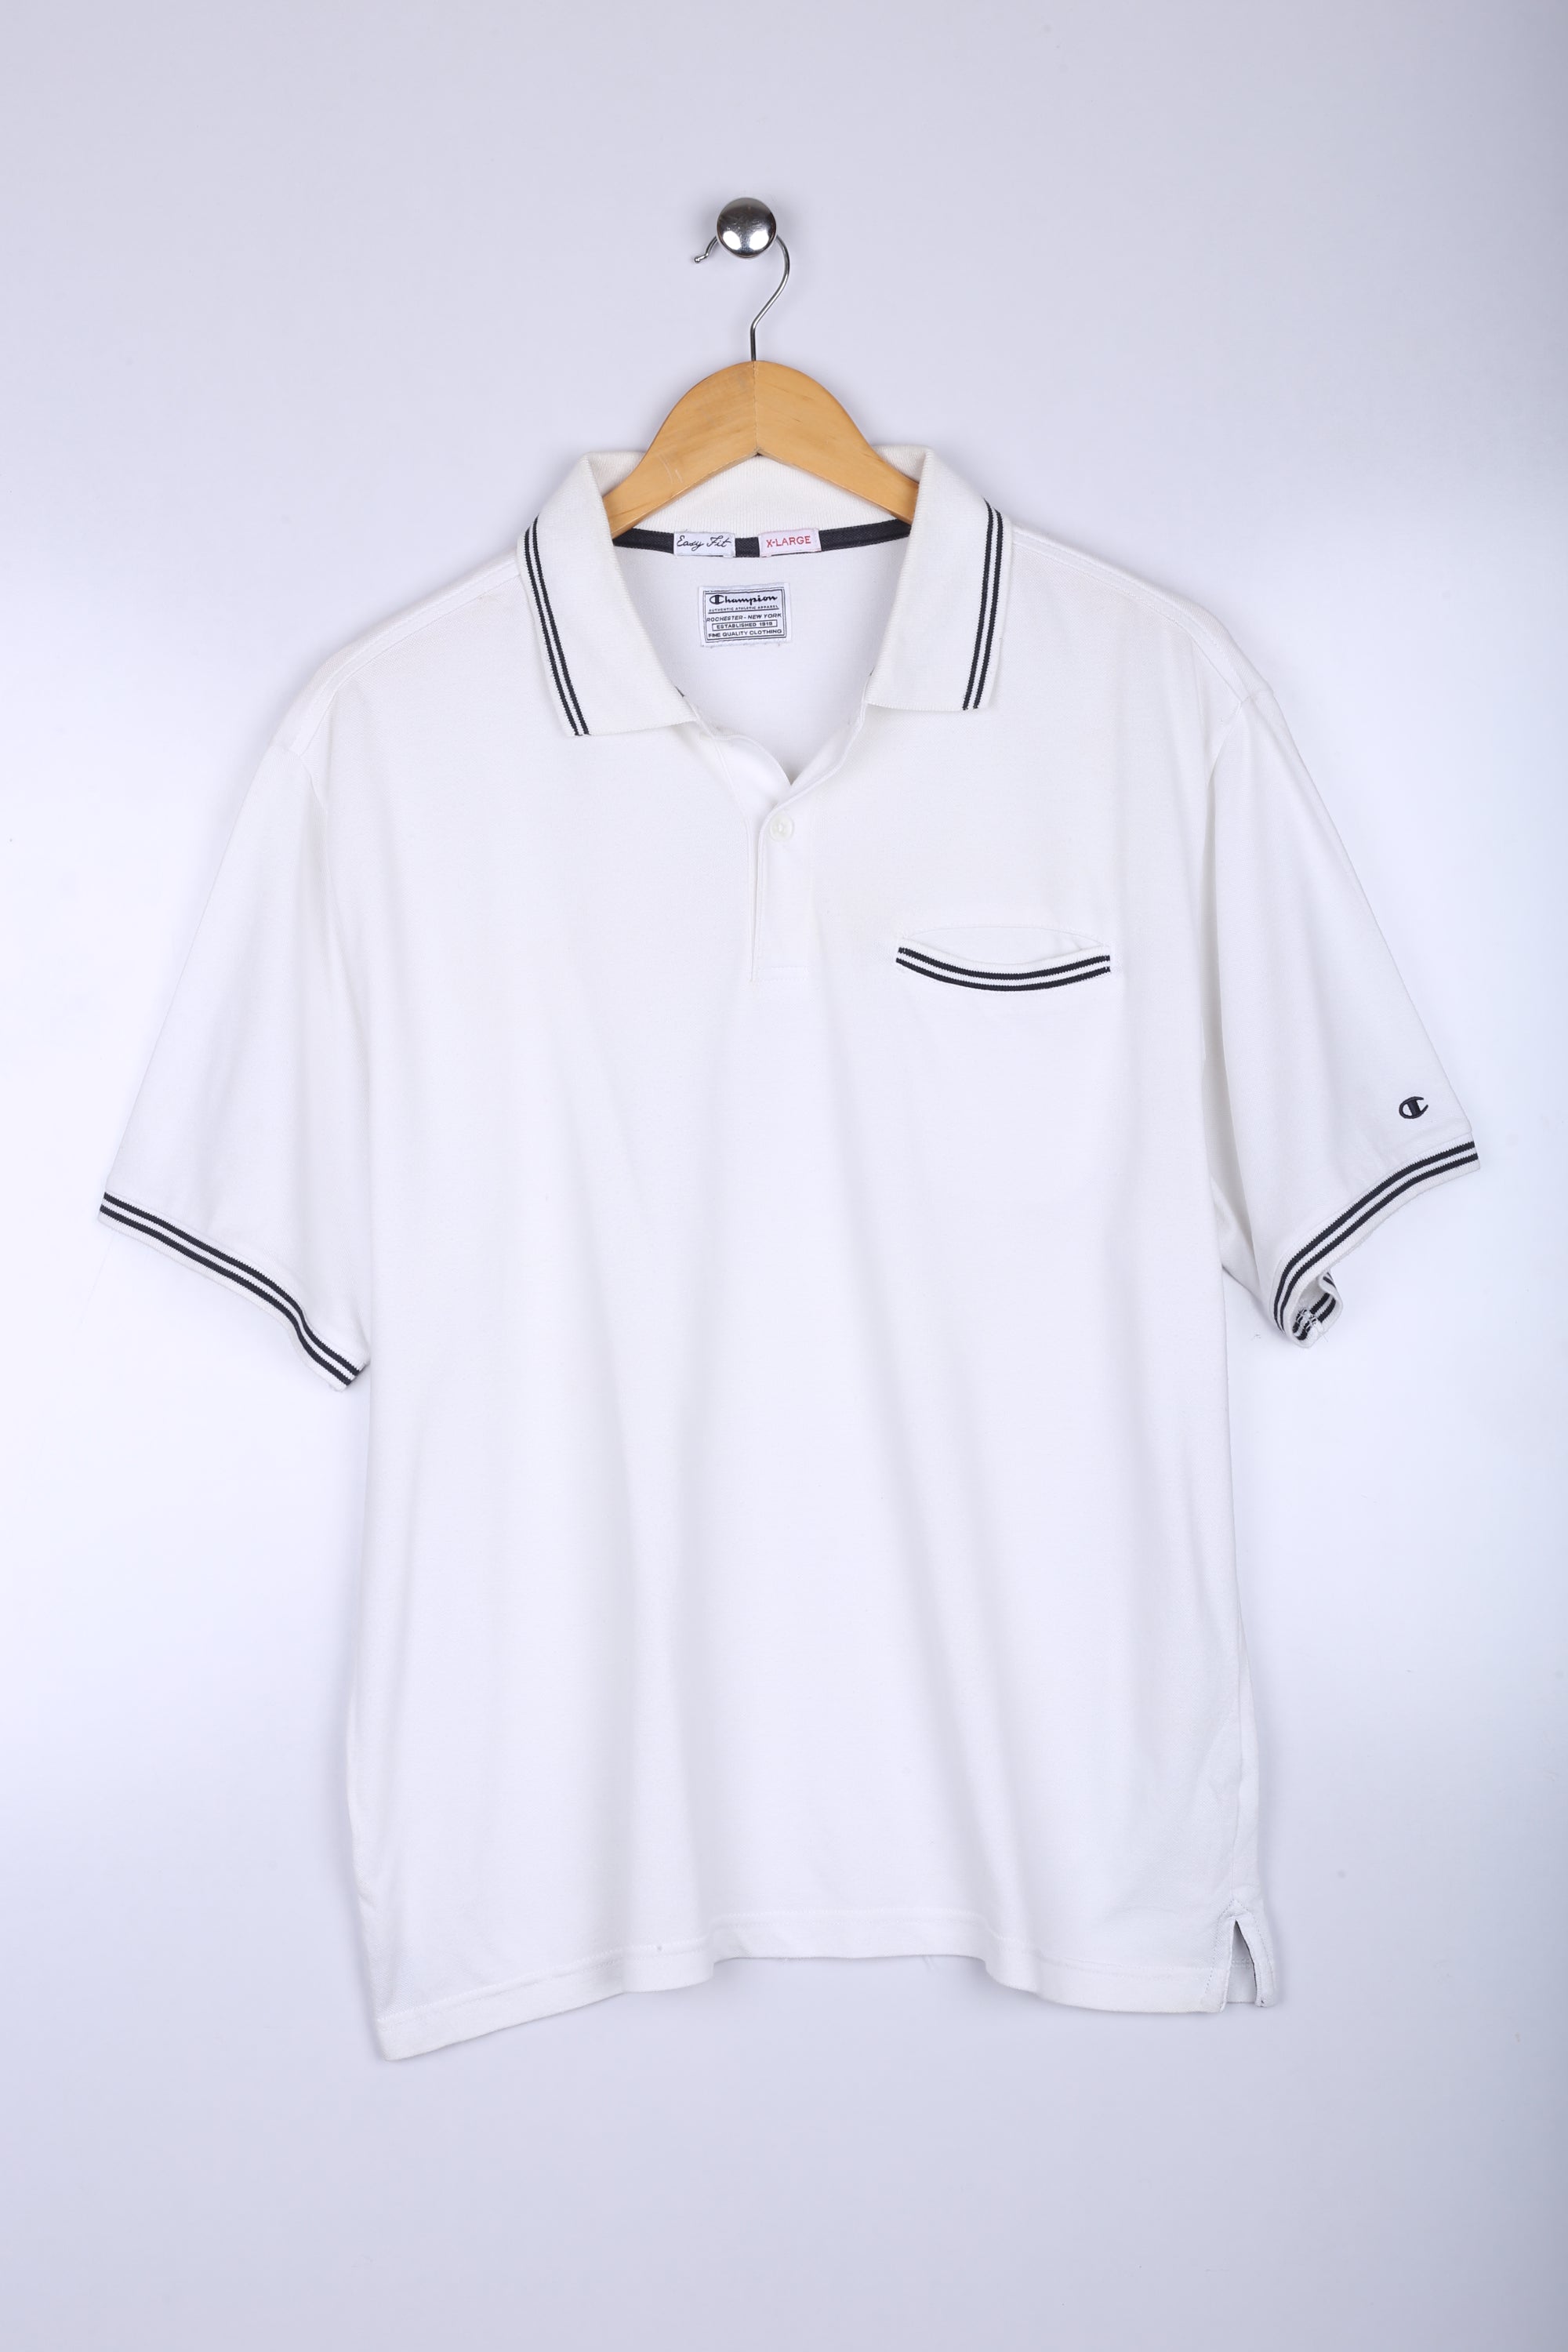 Vintage 80's Champion Polo White